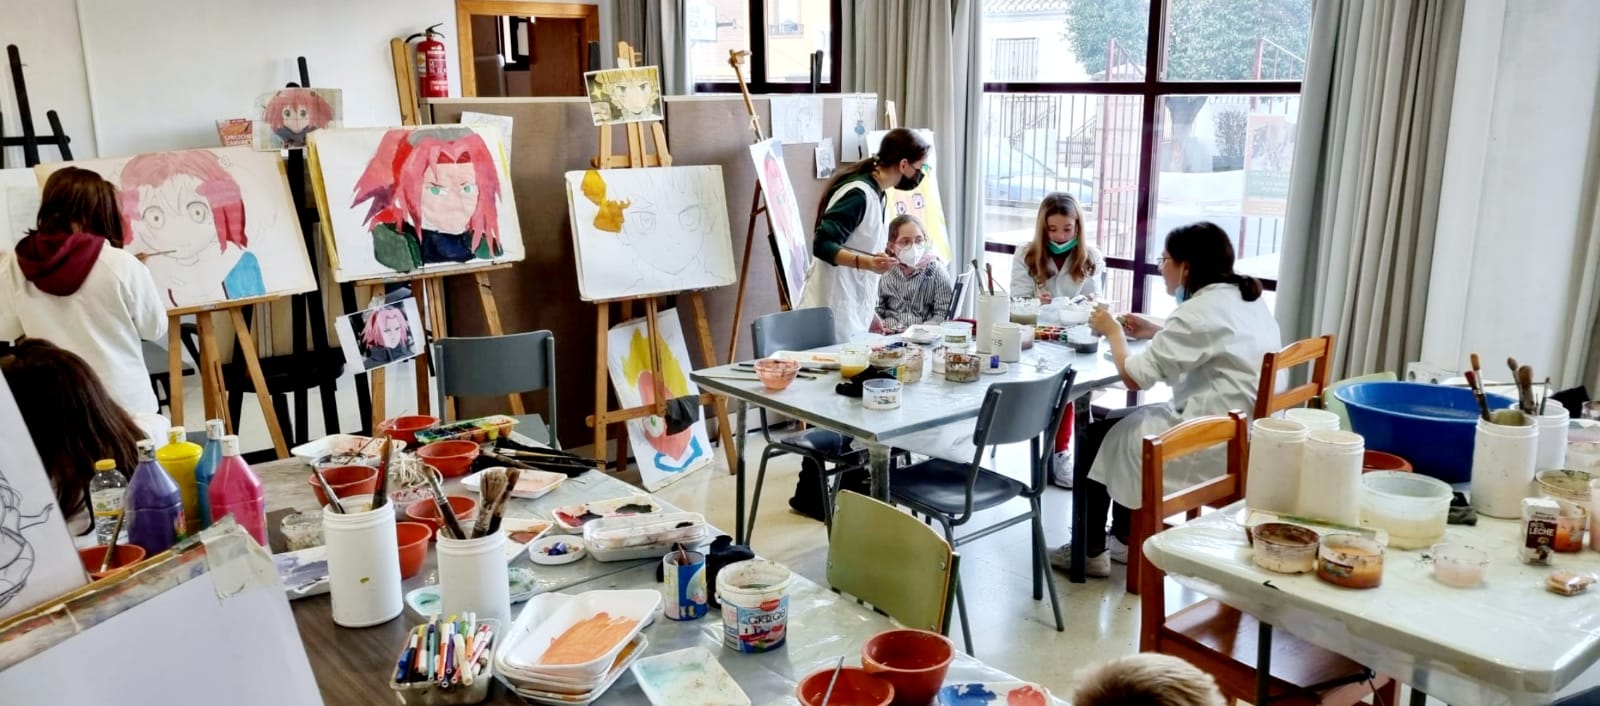 El taller de dibujo y pintura de Cúllar Vega estrena nuevas instalaciones y duplica su grupo de infantil